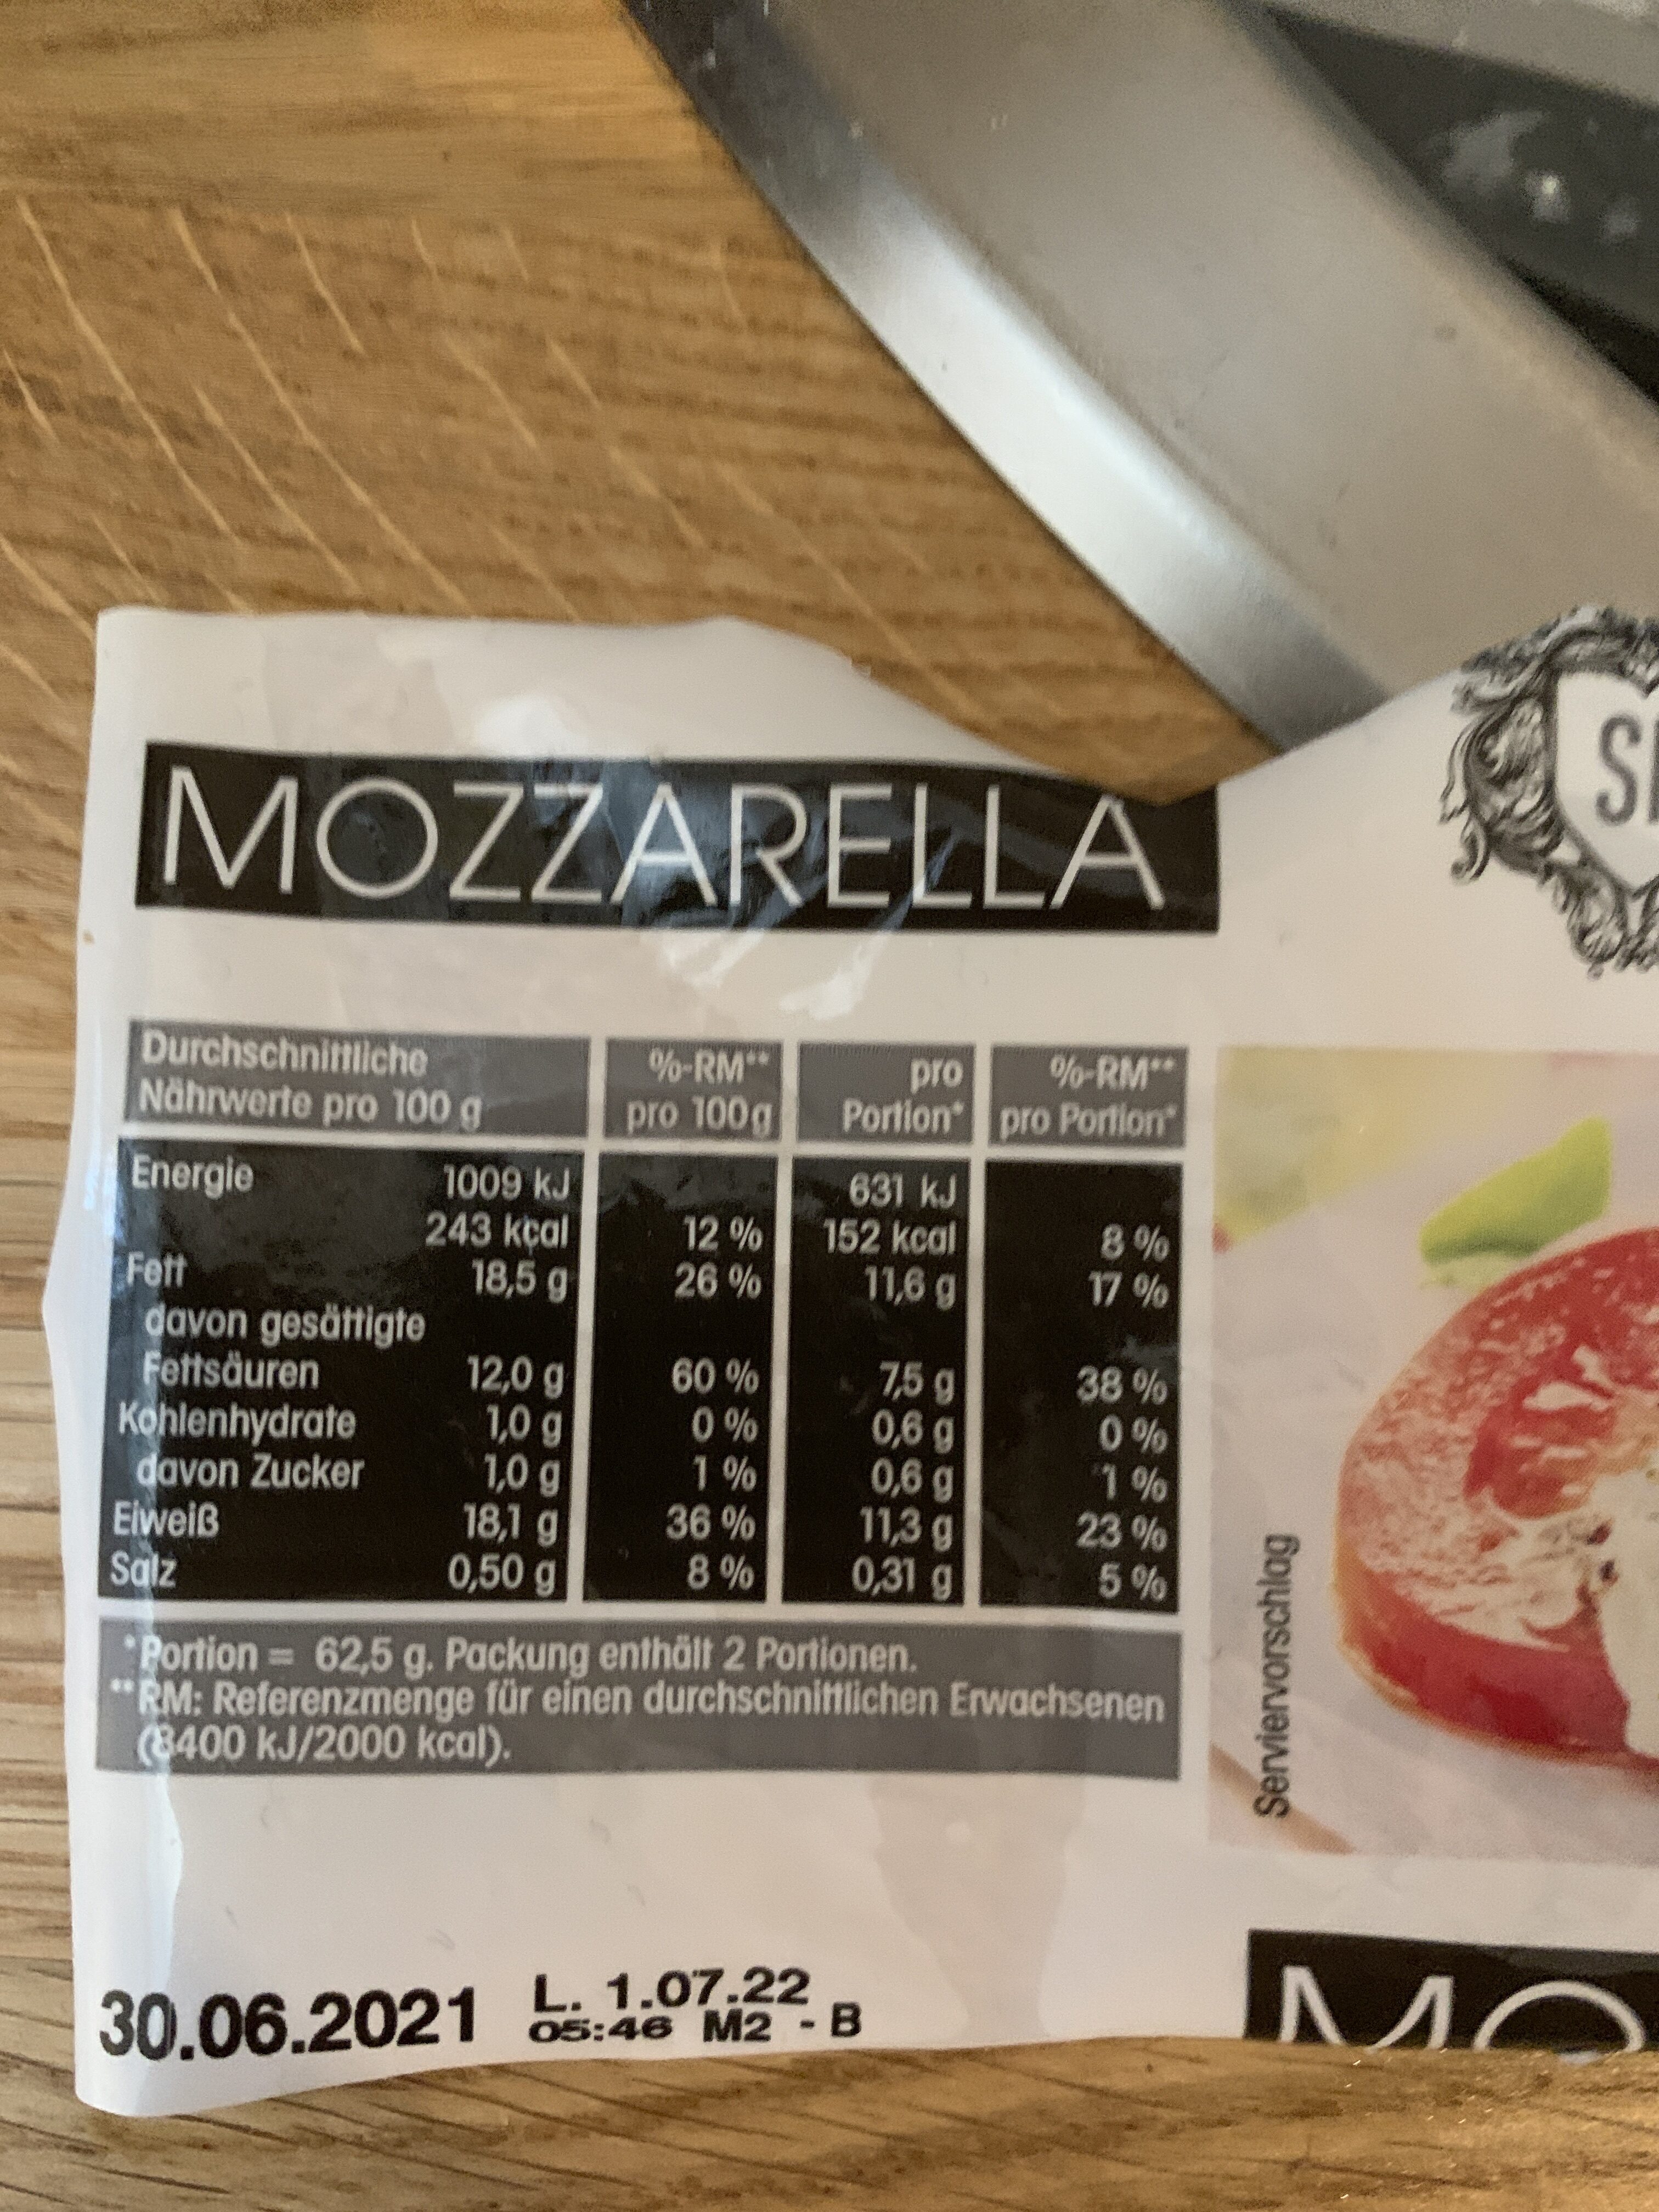 Mozzarella - Zutaten